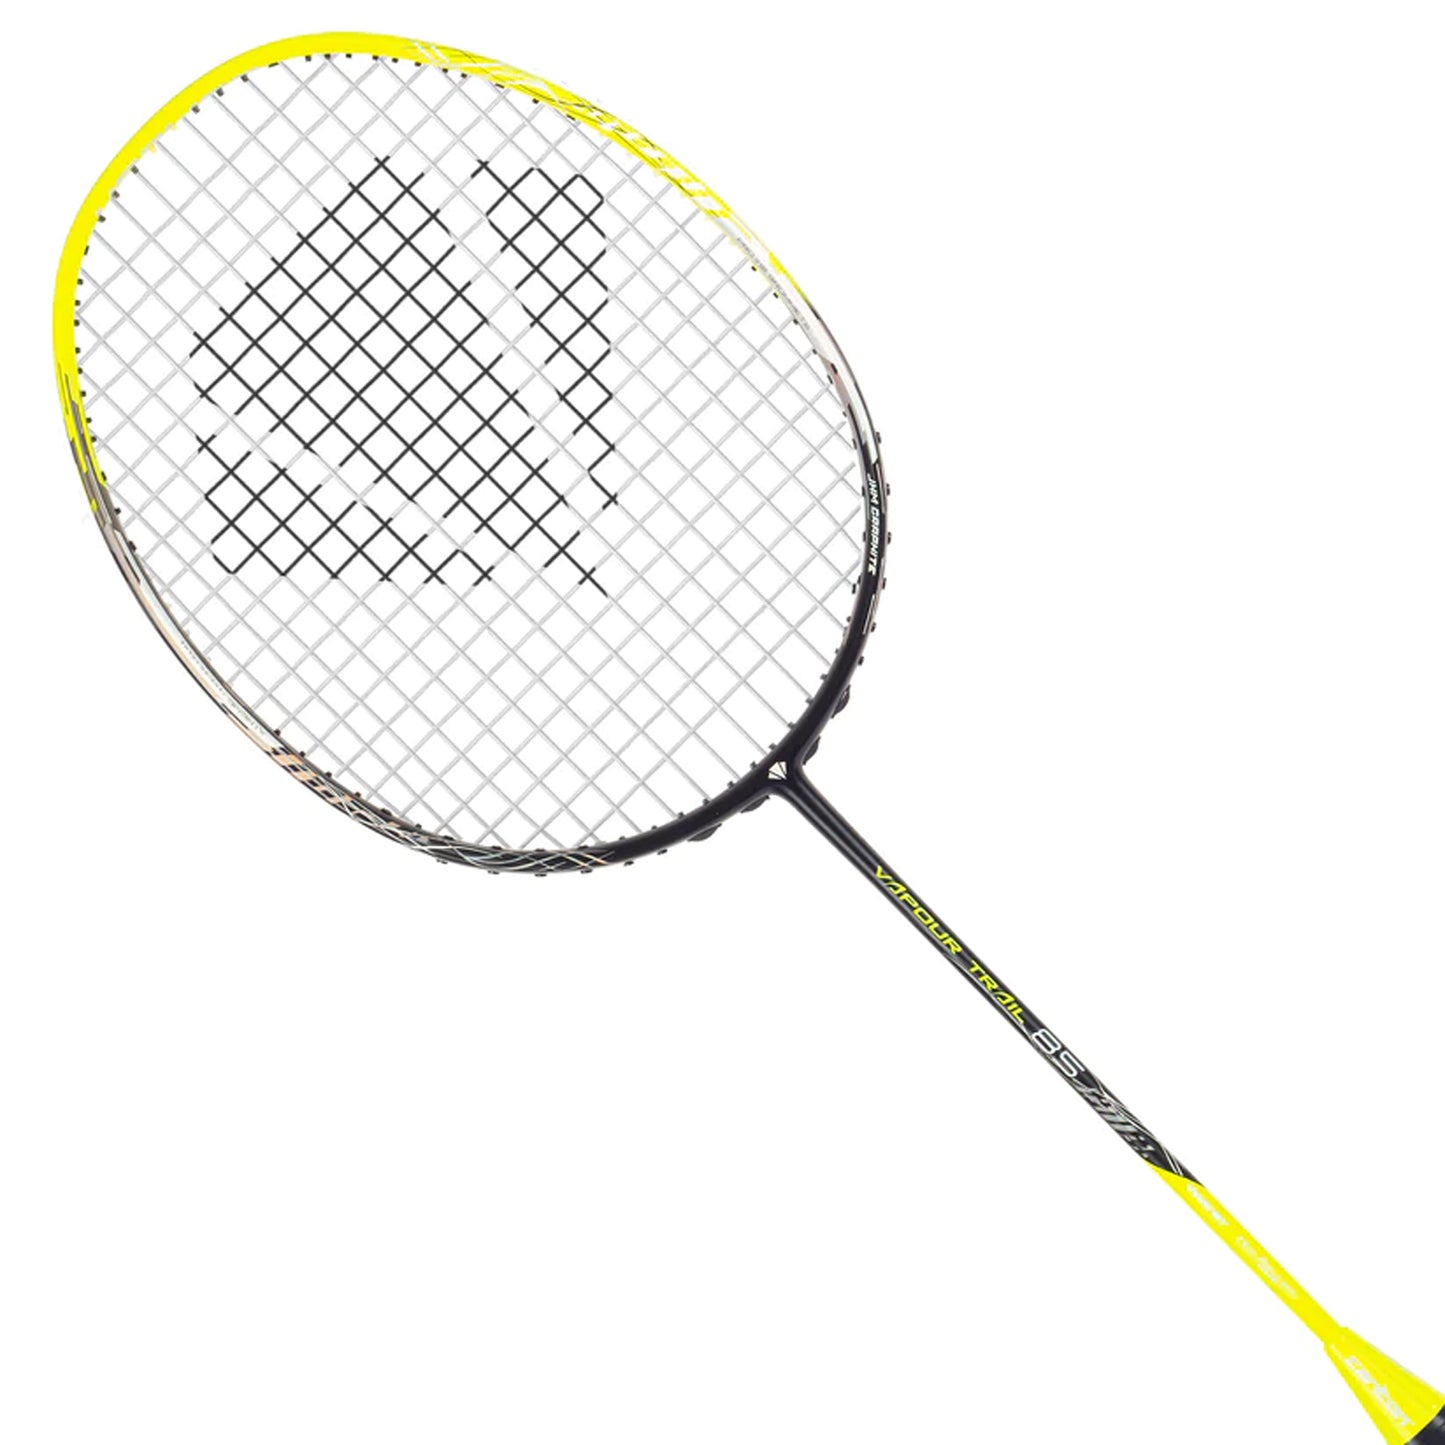 Carlton Vapour Trail 85 Unstrung Badminton Racquet,Black/Lime - Best Price online Prokicksports.com